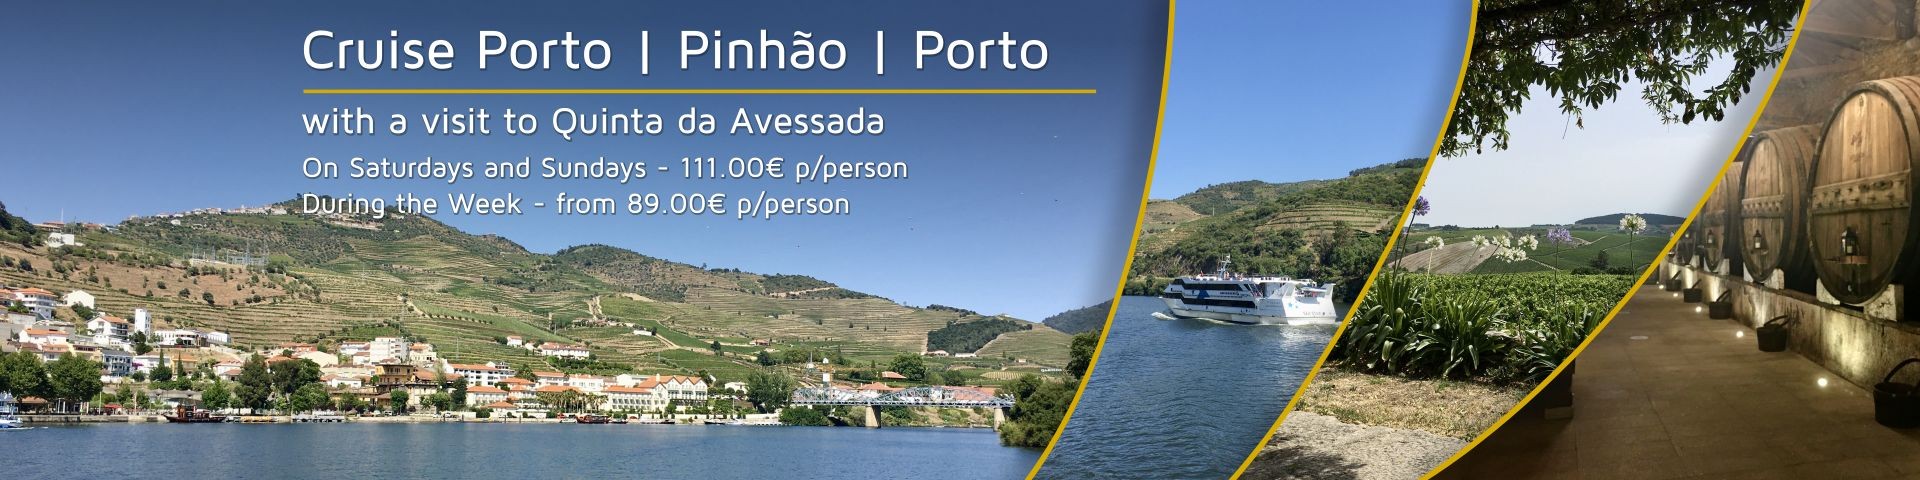 Cruise Porto Pinhão Porto